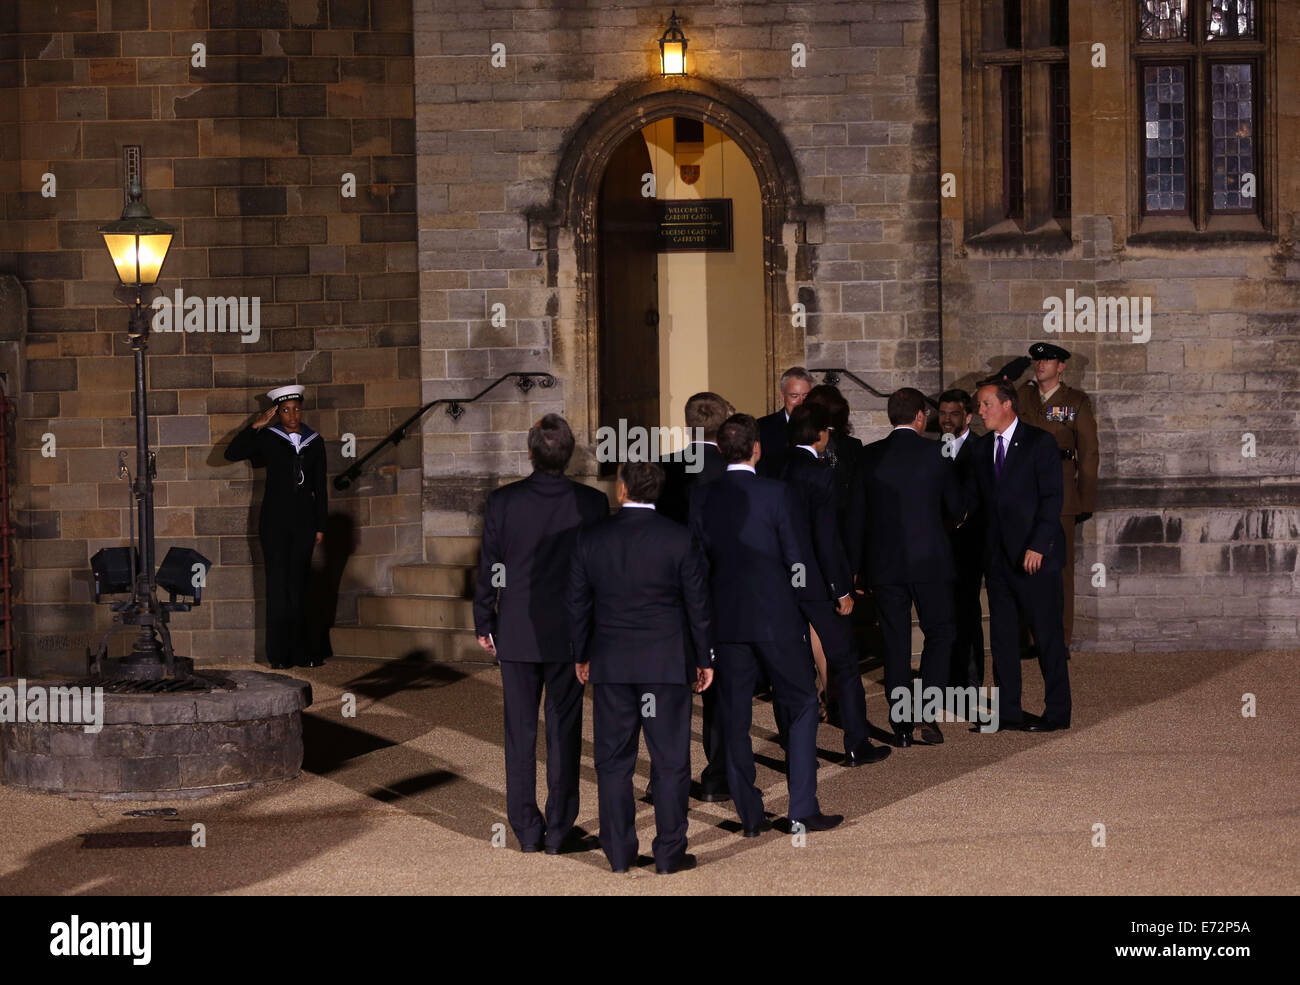 Cardiff UK. Le jeudi 04 septembre 2014 Photo : une file d'attente des dignitaires se forme à l'extérieur le château de Cardiff . Re : dîner officiel, chef de délégations au château de Cardiff dans le cadre du sommet de l'OTAN, dans le sud du Pays de Galles, Royaume-Uni. Banque D'Images